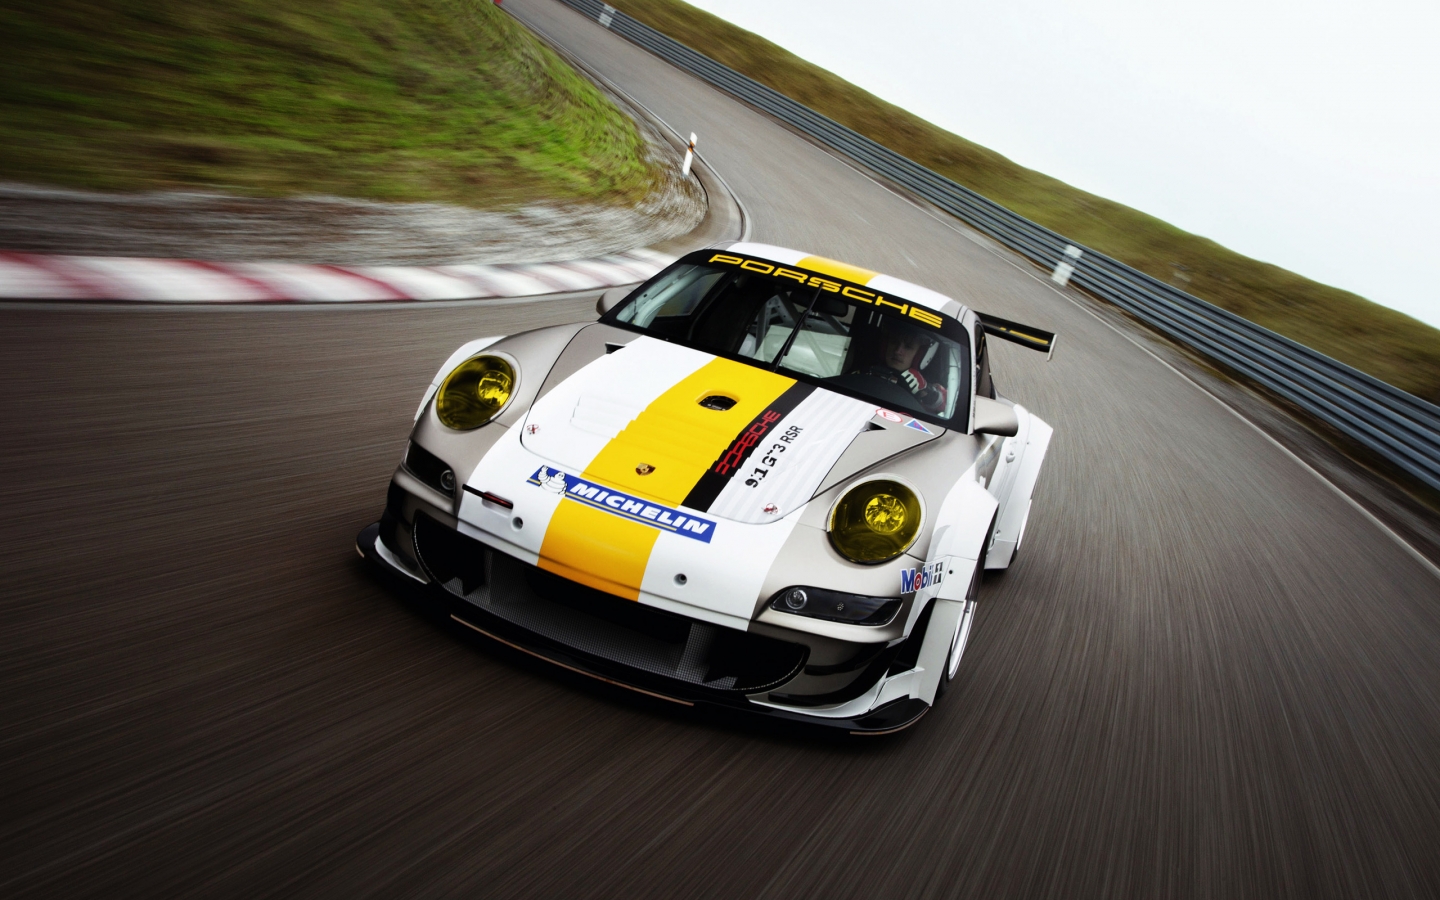 Porsche 911 GT3 RSR for 1440 x 900 widescreen resolution